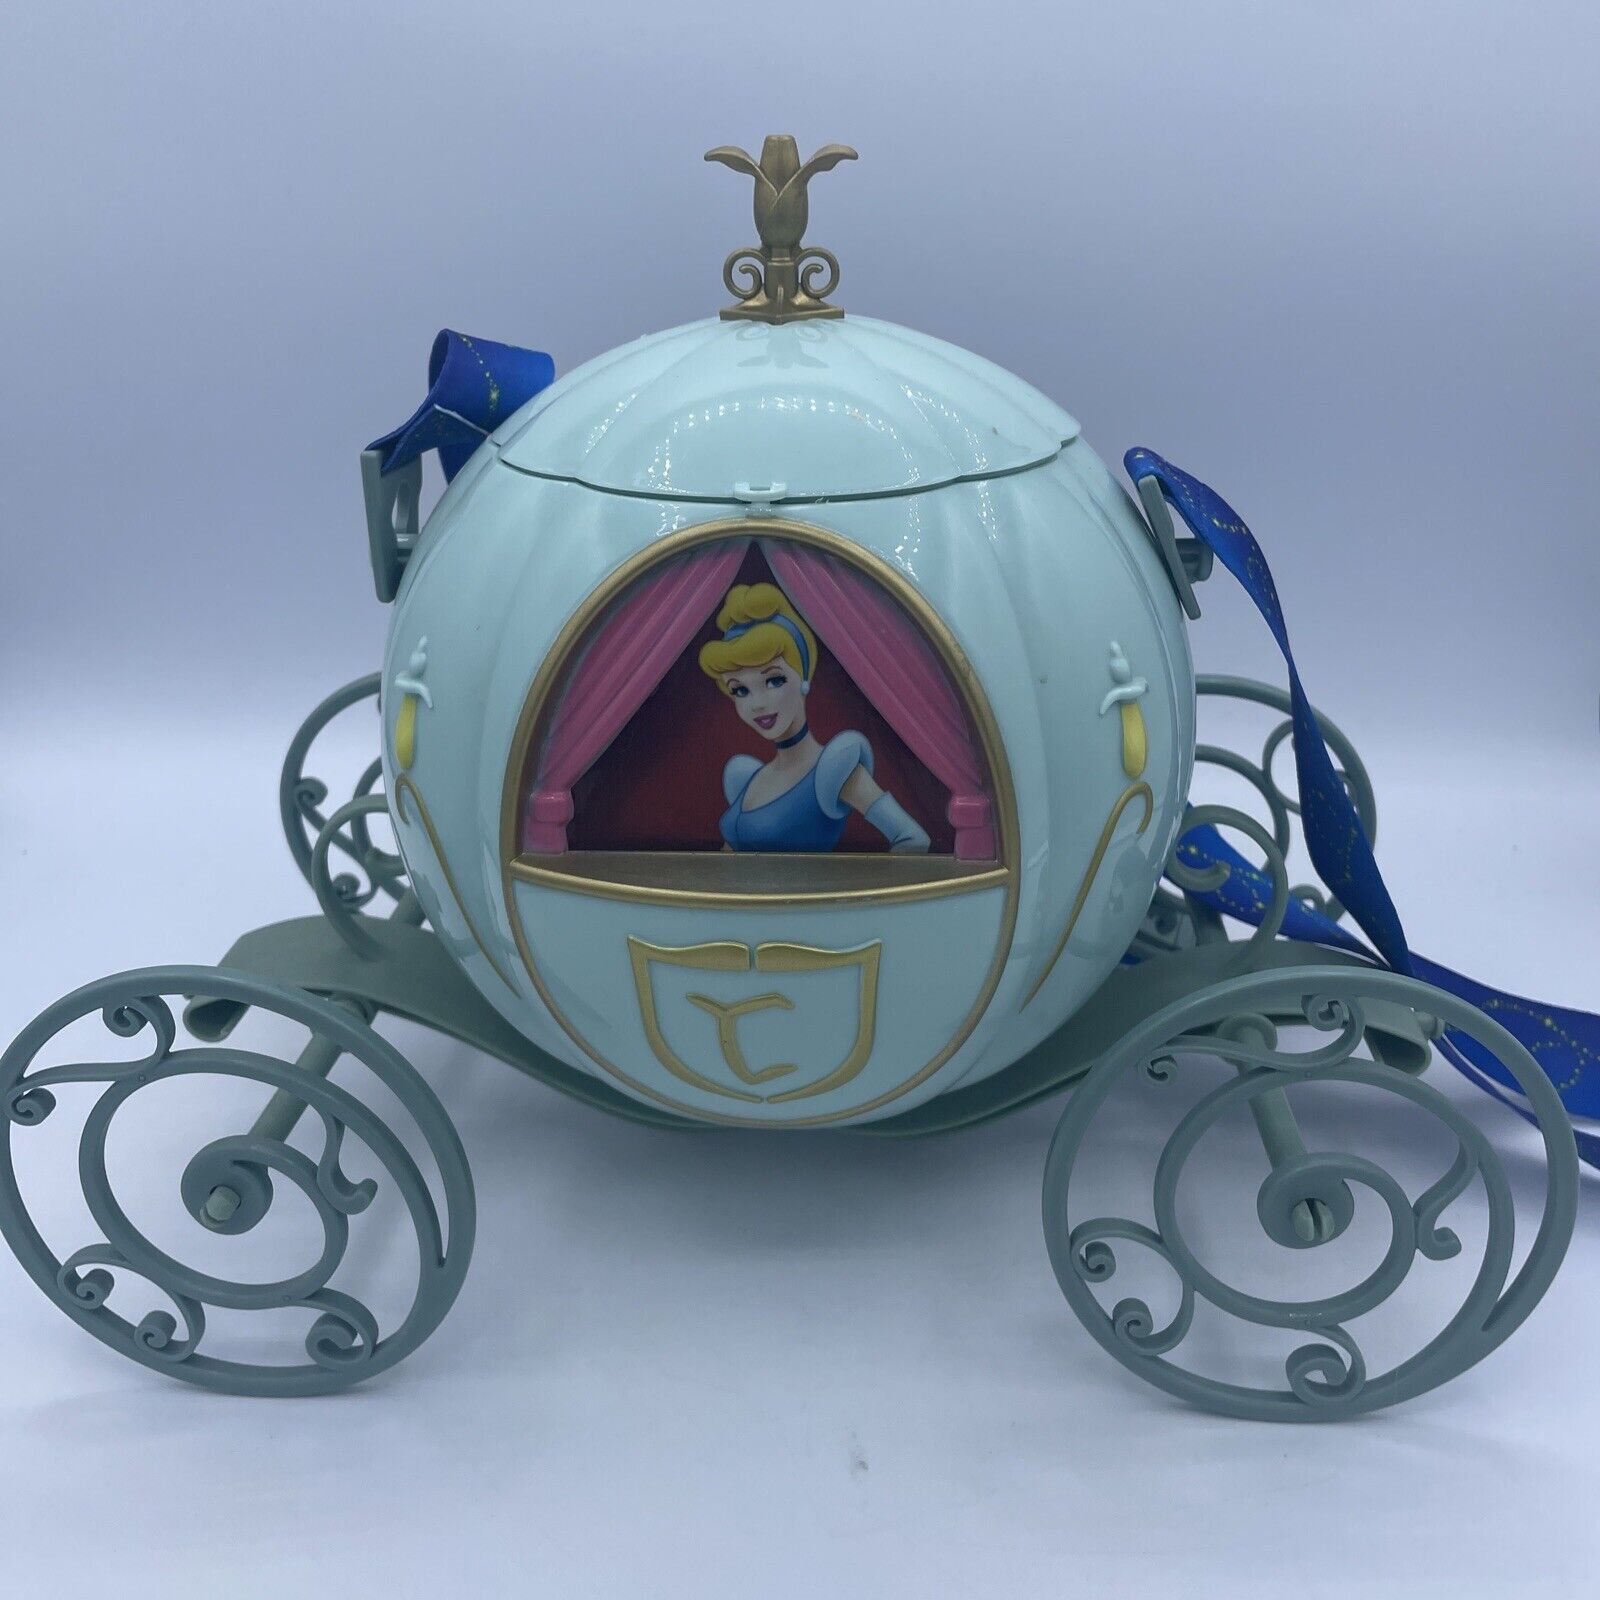 Limited Edition Disneys Cinderella Popcorn Bucket With Strap